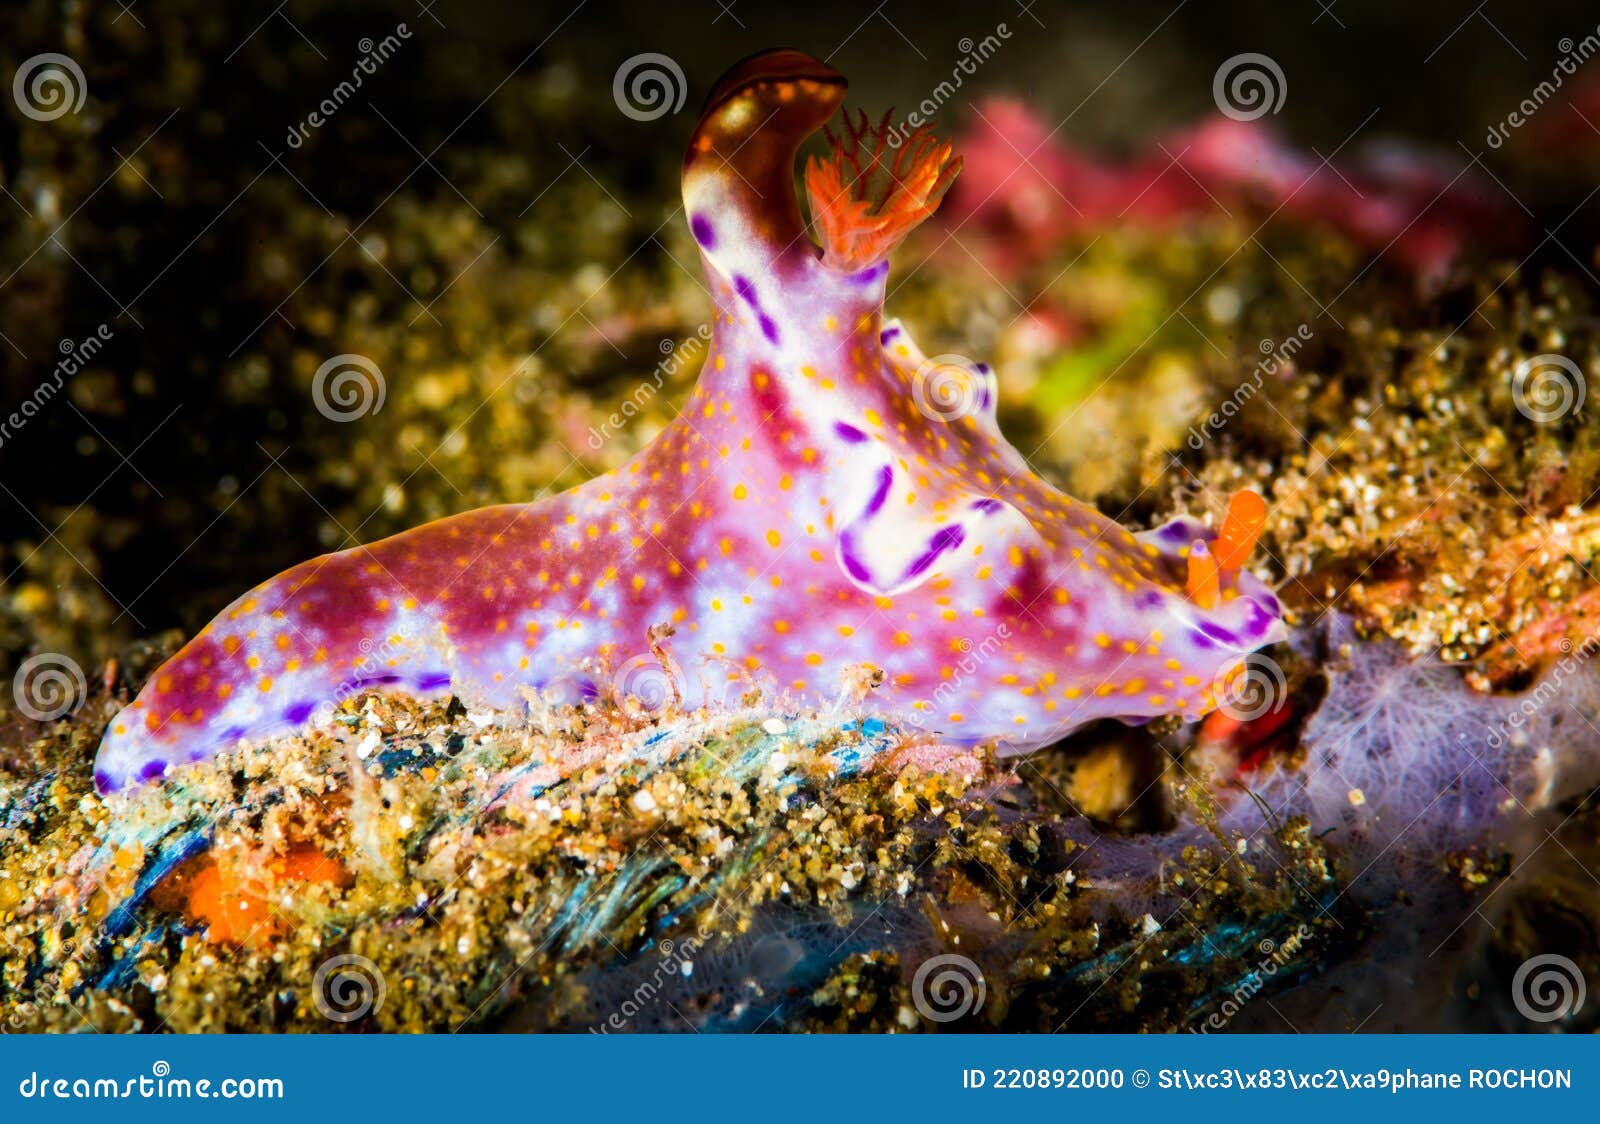 nudibranch ceratosoma tenue abraham